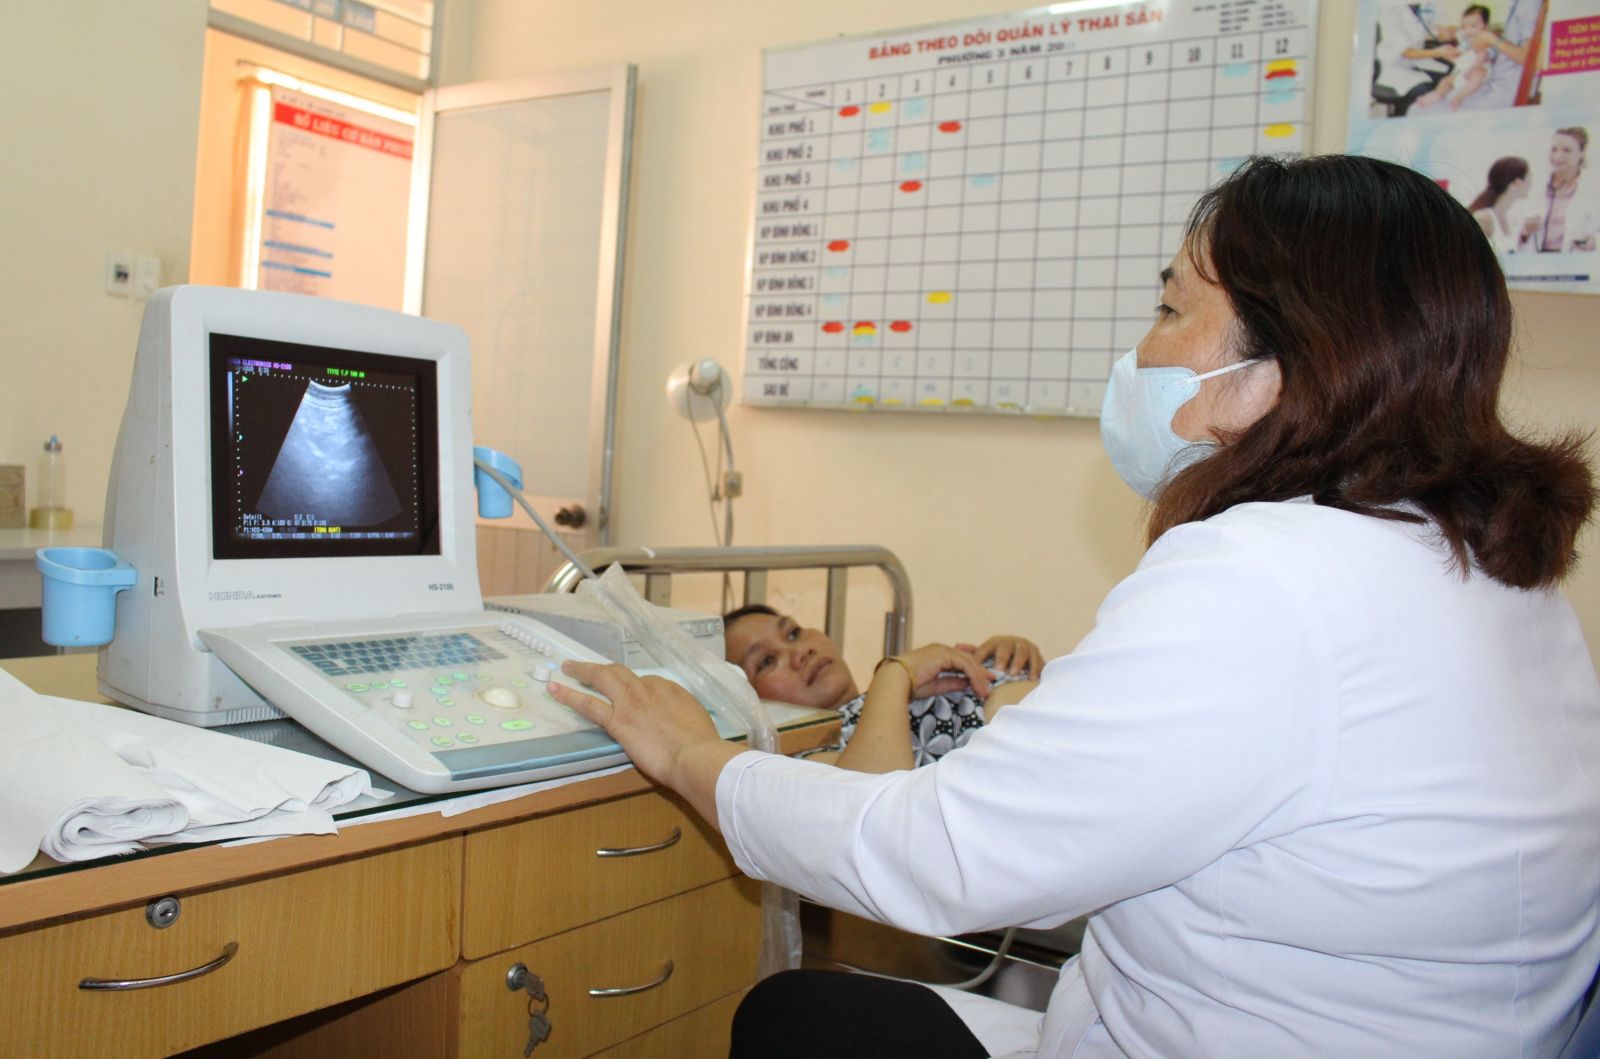 Siêu âm tầm soát các bệnh lý phụ khoa cho phụ nữ trong các đợt chiến dịch chăm sóc sức khỏe sinh sản